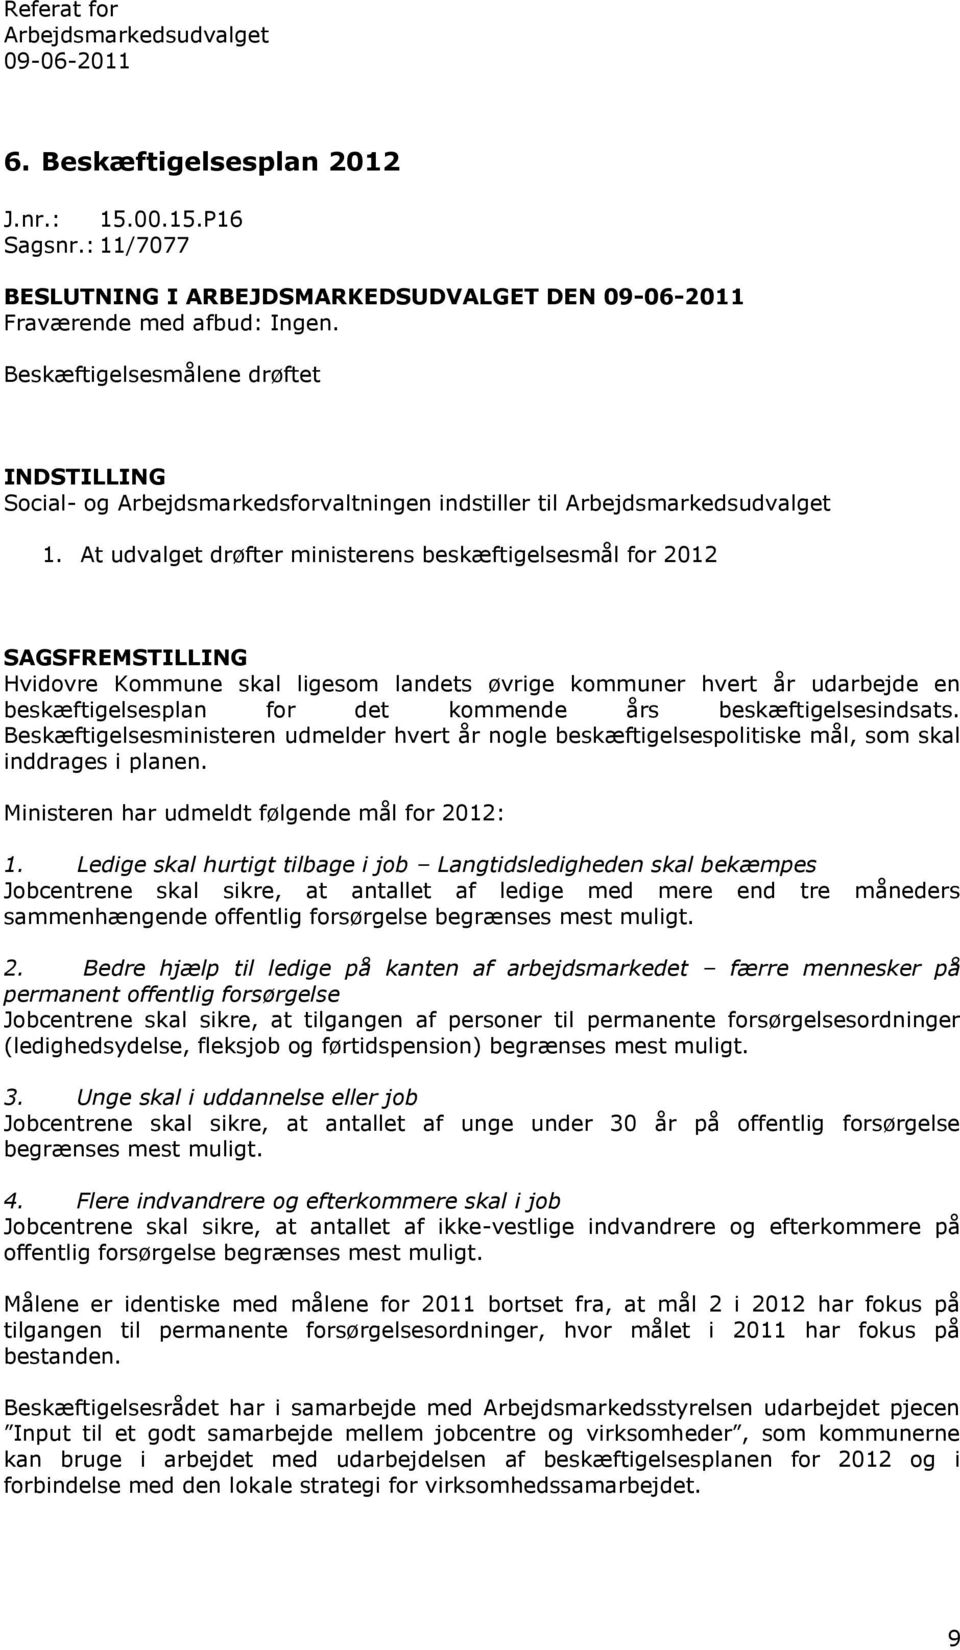 At udvalget drøfter ministerens beskæftigelsesmål for 2012 SAGSFREMSTILLING Hvidovre Kommune skal ligesom landets øvrige kommuner hvert år udarbejde en beskæftigelsesplan for det kommende års